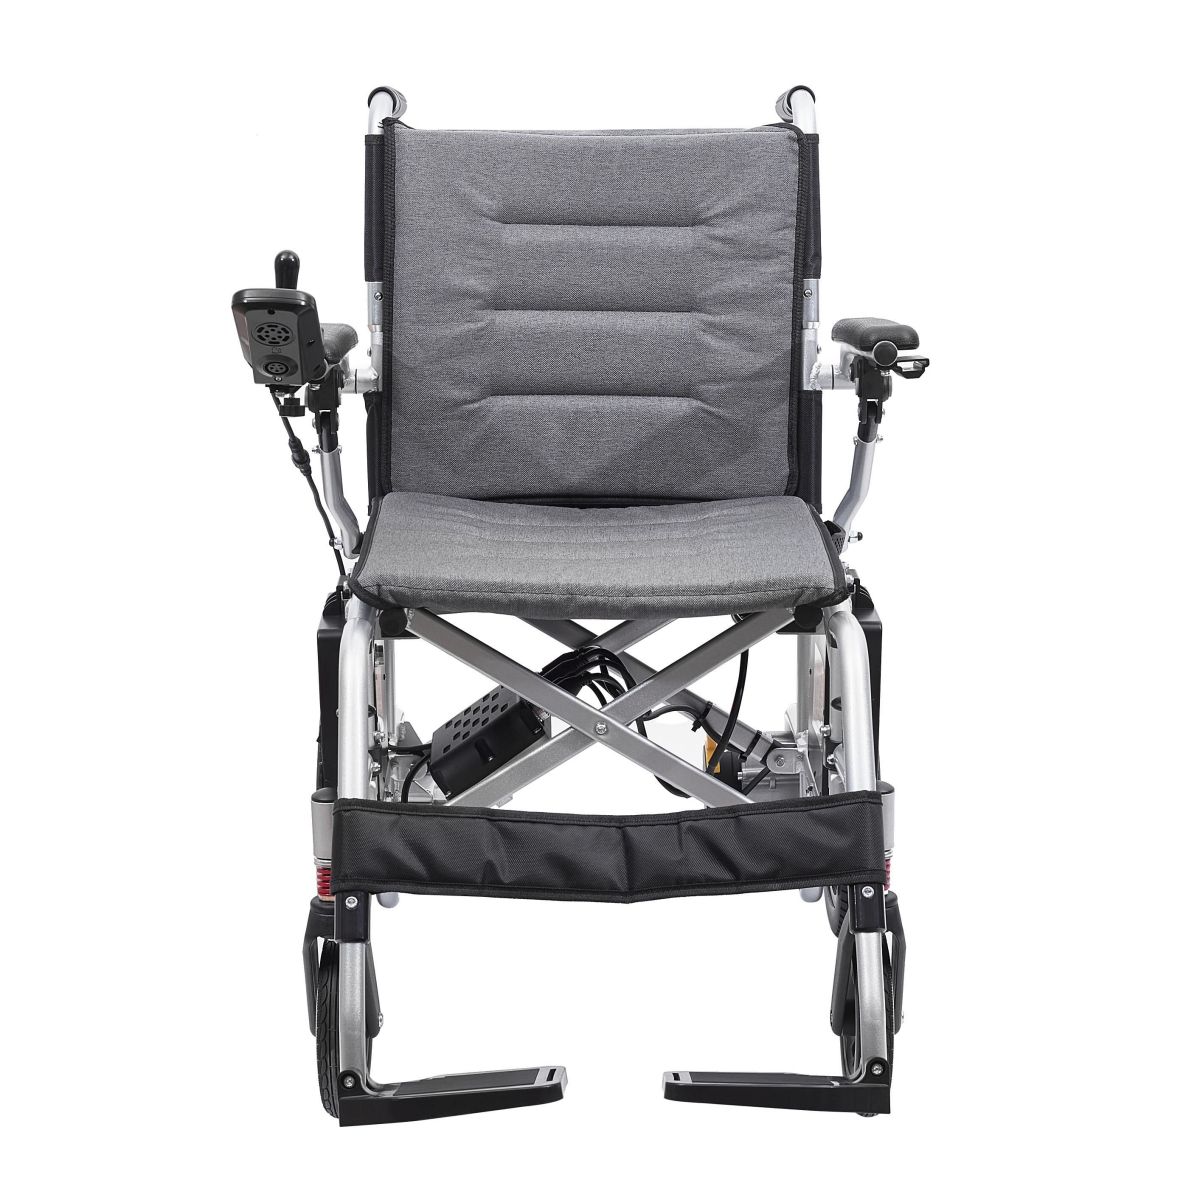 مصنع الكراسي المتحركة الكهربائية المحمولة: اختر كرسيًا متحركًا كهربائيًا